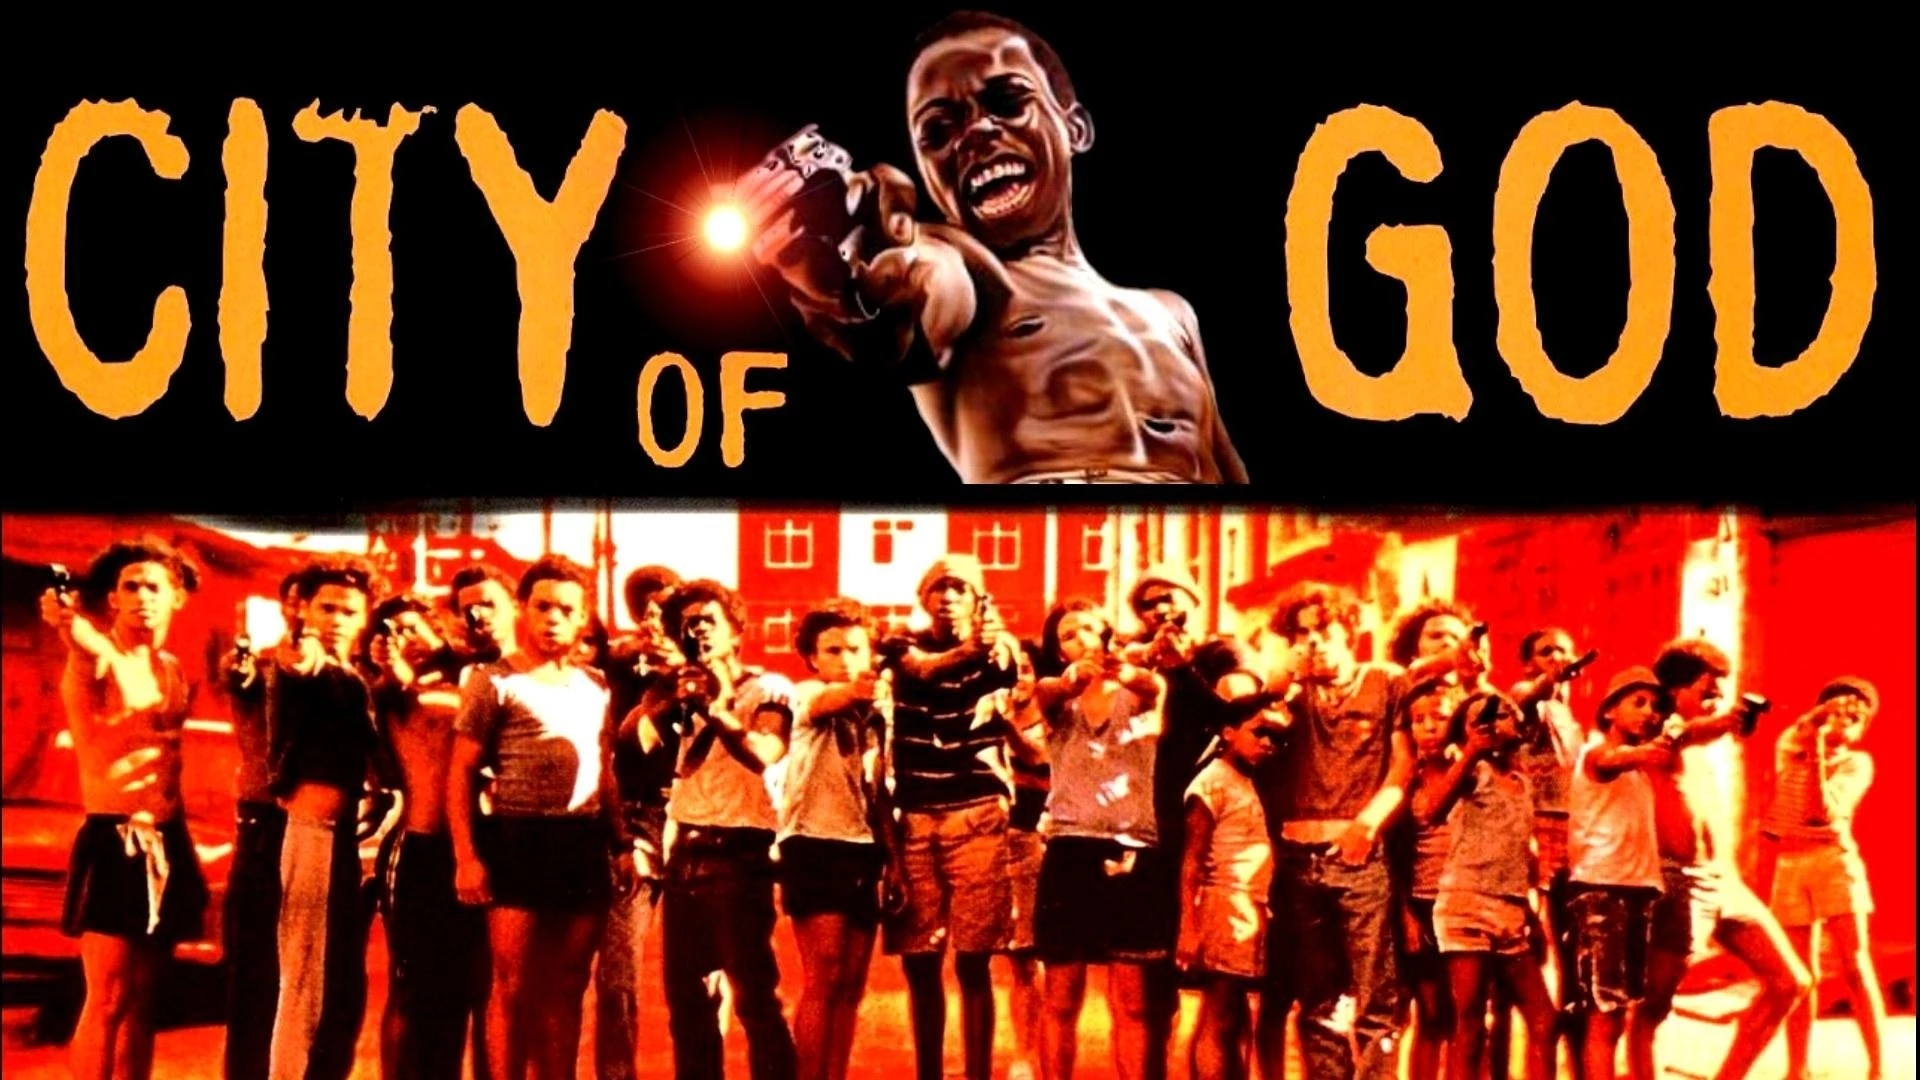 City of God (2002) - movies like Boyz n the hood